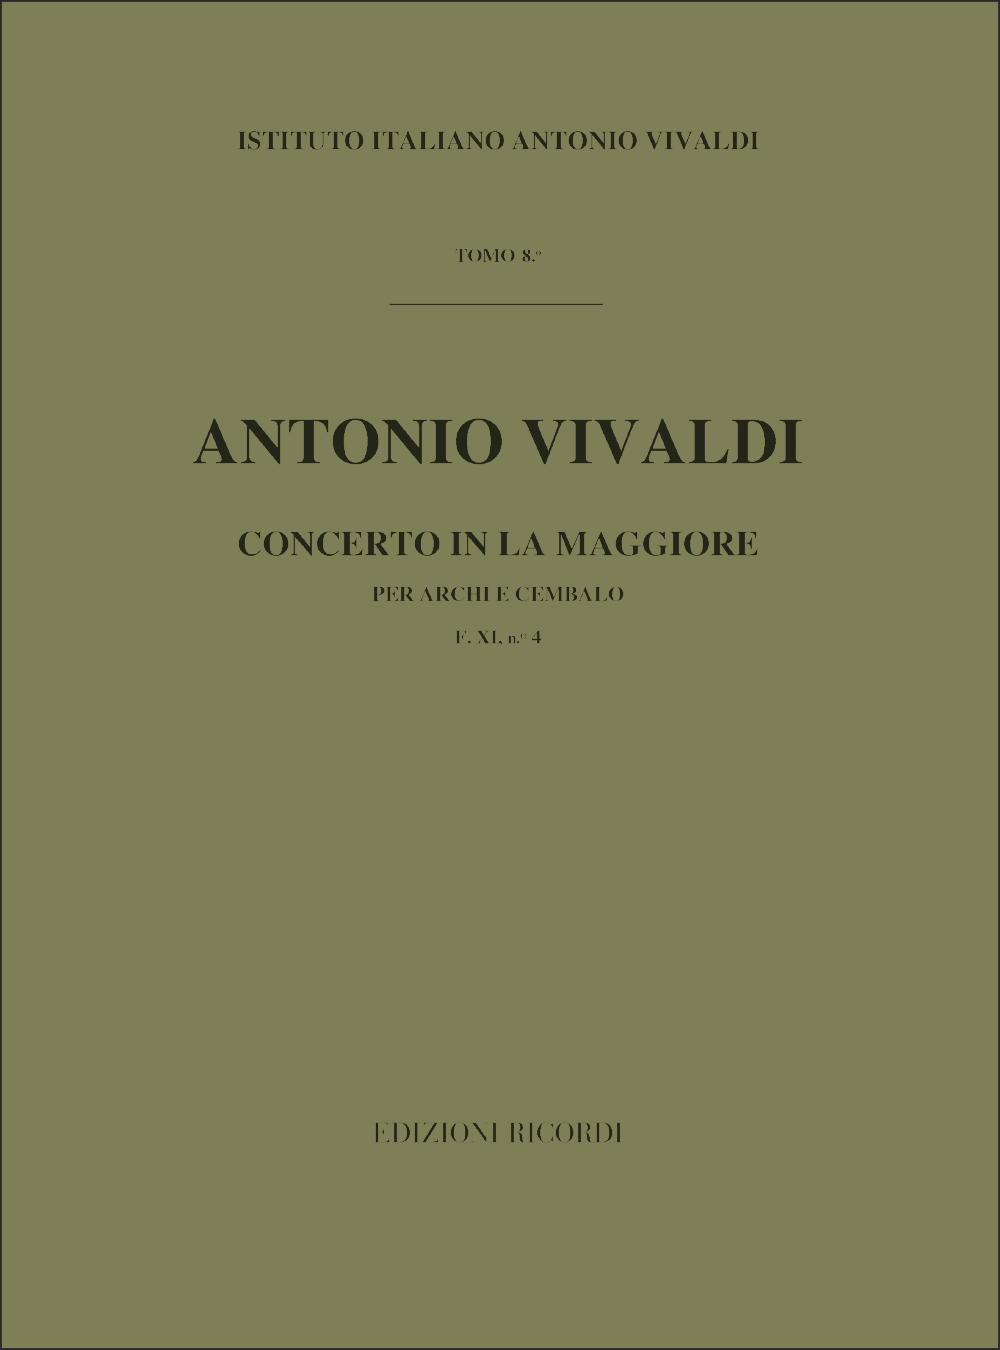 Antonio Vivaldi: Concerto per Archi in La Maggiore RV 158: Orchestra